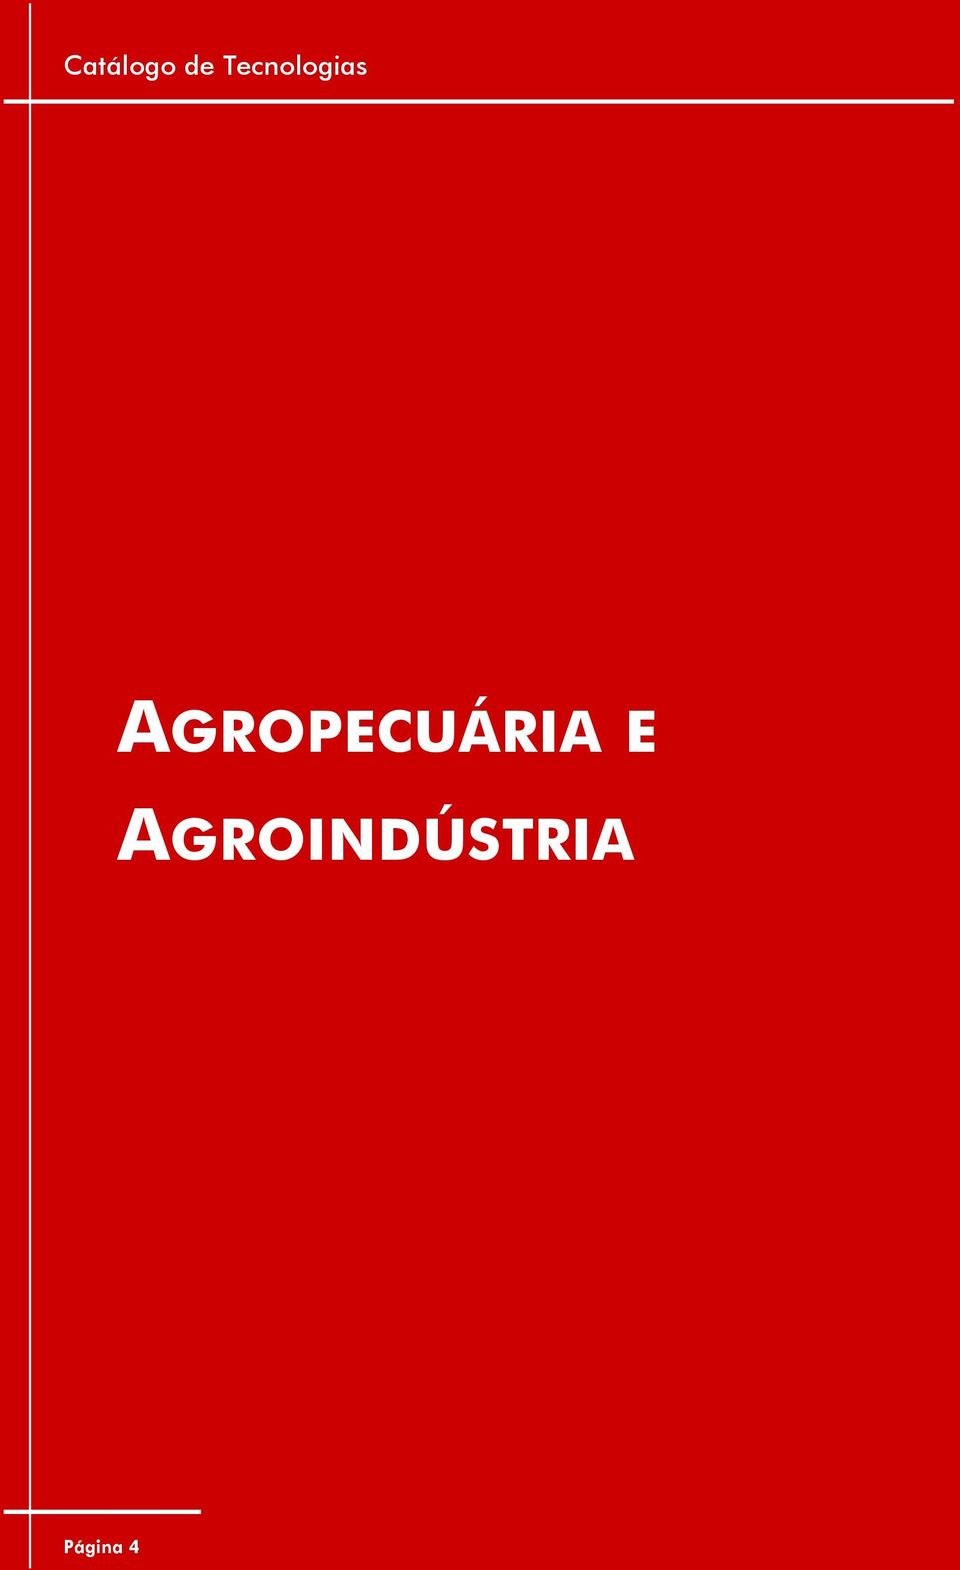 AGROPECUÁRIA E